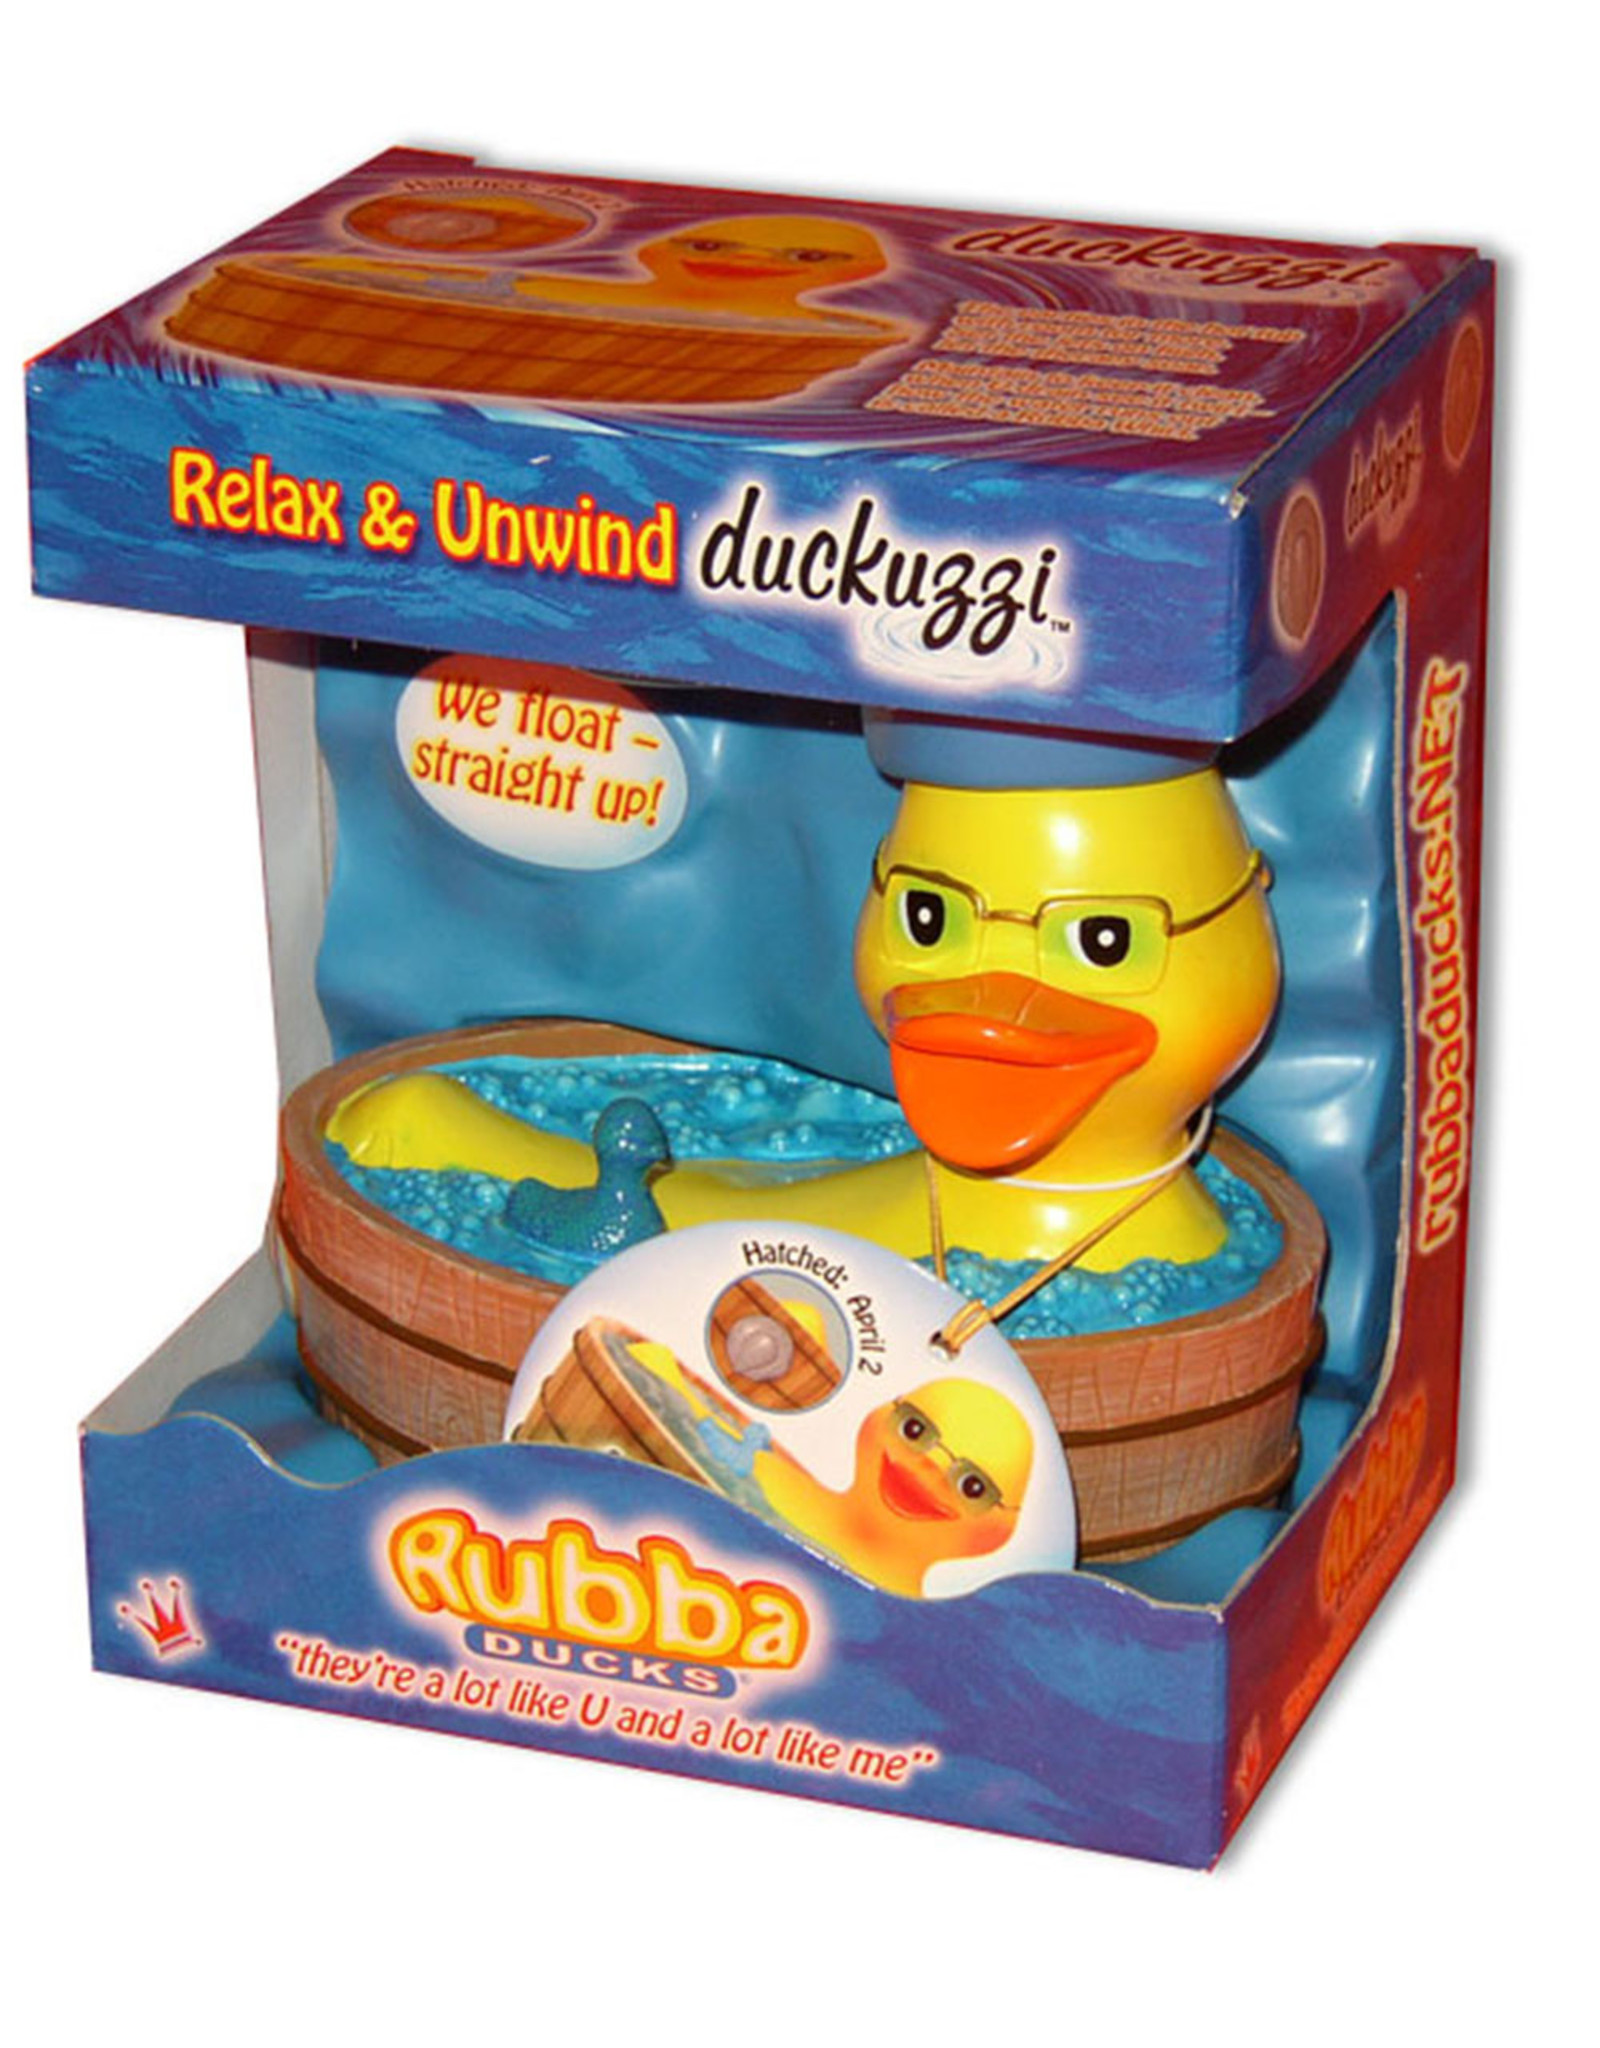 Duckuzzi in a Wooden Jacuzzi Rubber Duck